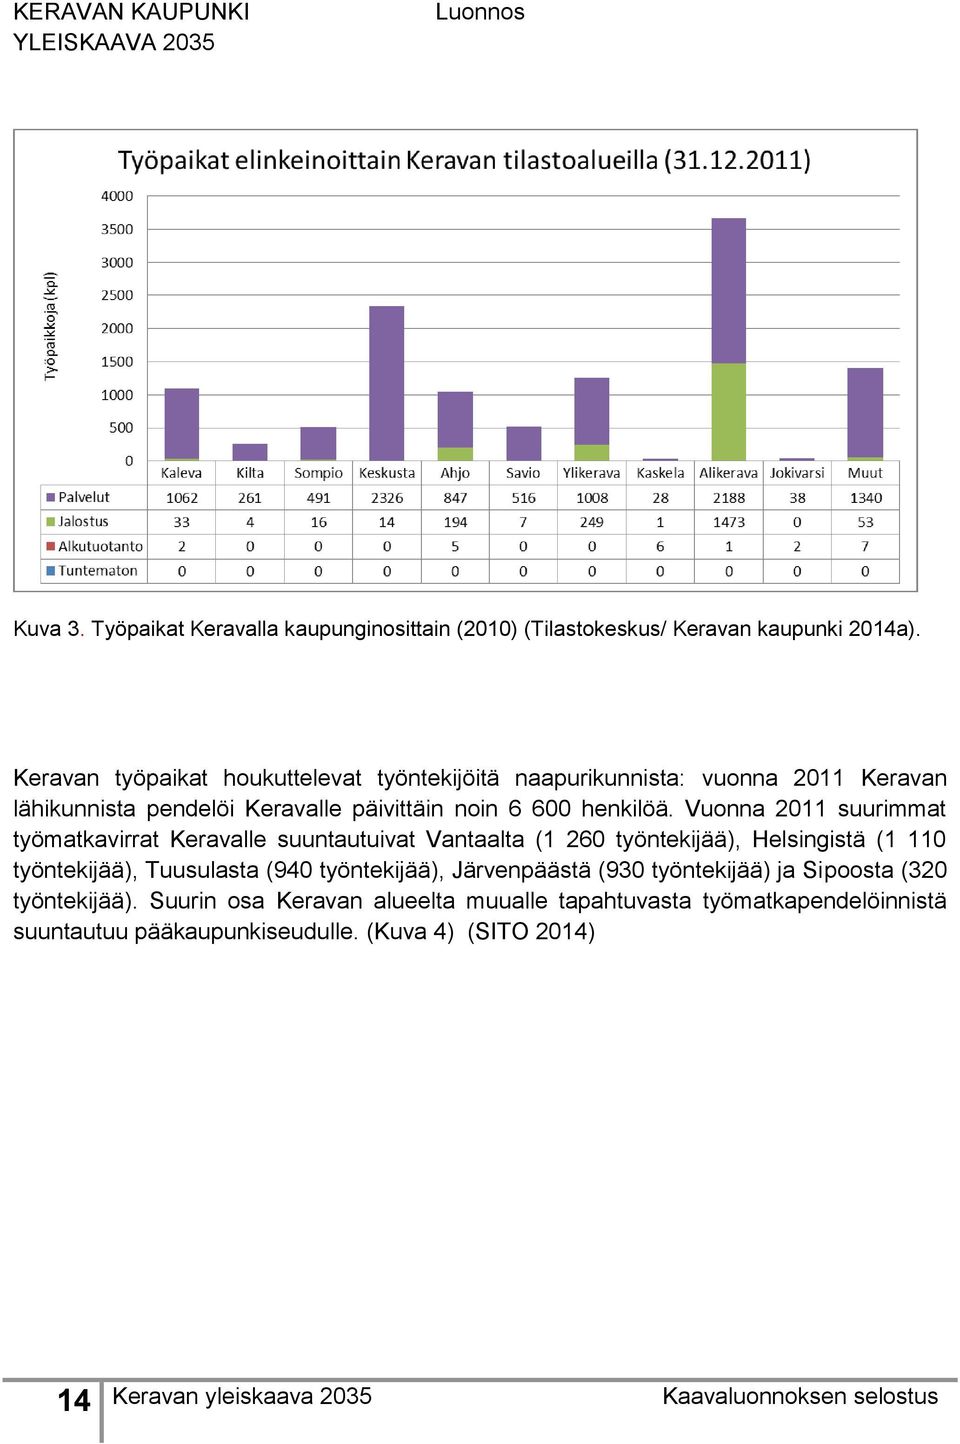 Vuonna 2011 suurimmat työmatkavirrat Keravalle suuntautuivat Vantaalta (1 260 työntekijää), Helsingistä (1 110 työntekijää), Tuusulasta (940